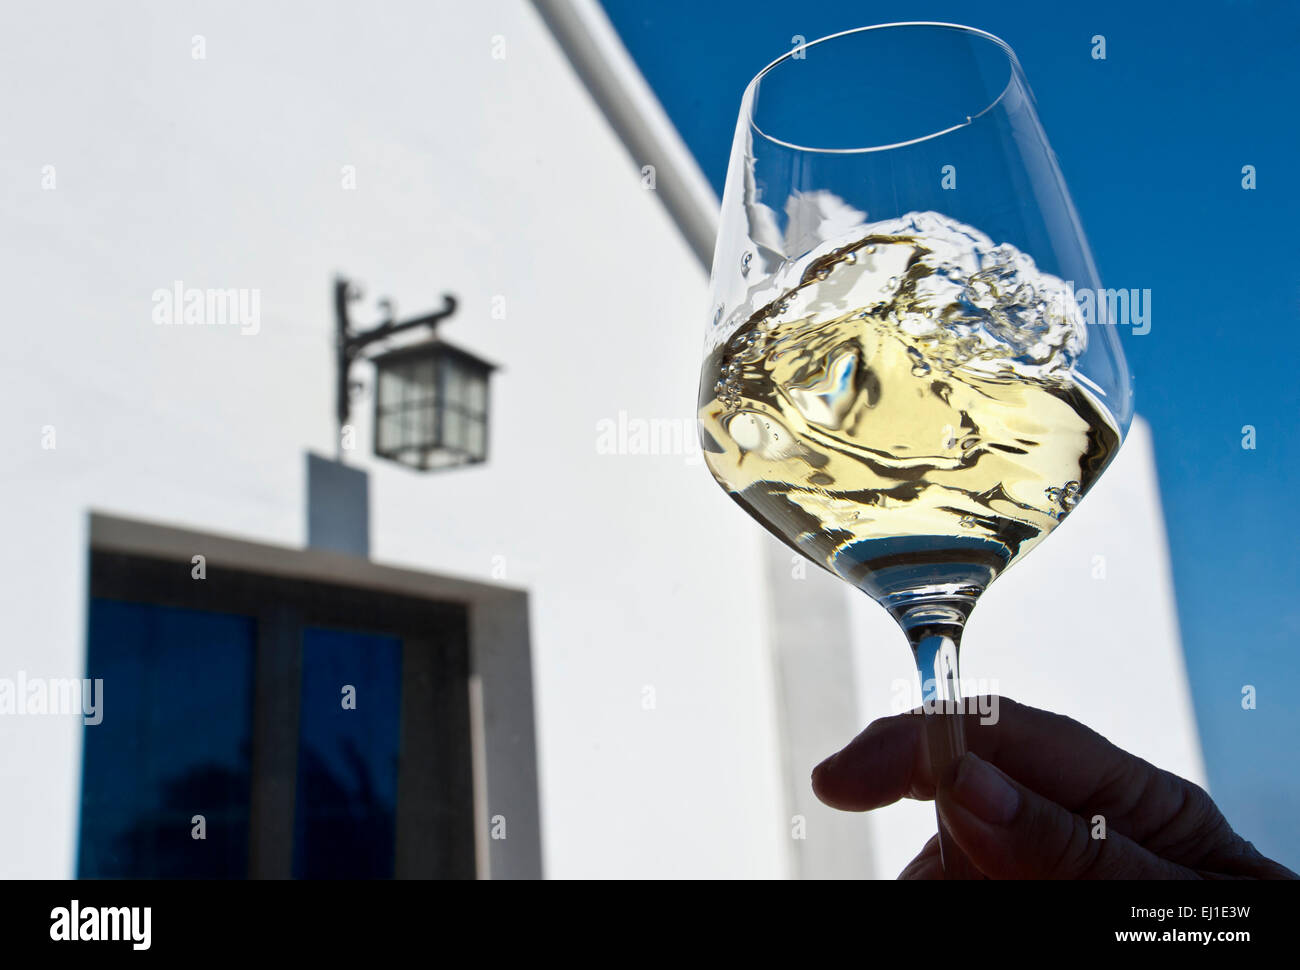 WEINPROBE IM FREIEN, wirbeln und bewerten Sie ein Glas Weißwein im Freien, blauer Himmel, Urlaub, Weingut, Urlaub, sonnige Weinprobe Situation Stockfoto